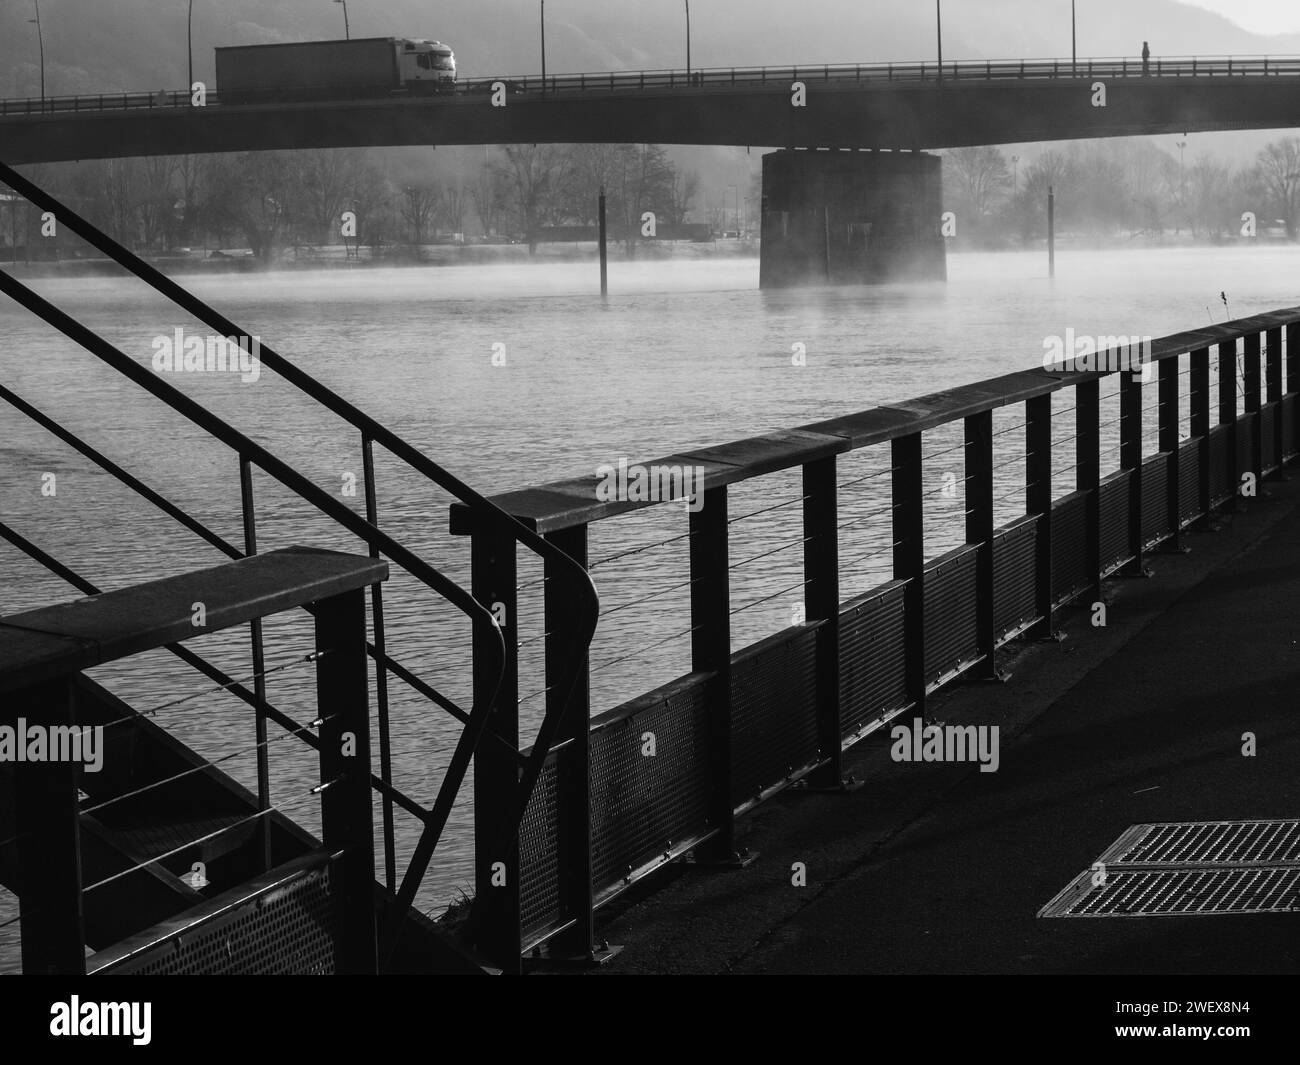 Il fiume Senna a Vernon, Normandia, Francia. | immagine monocromatica di un fiume nebbioso con un ponte sullo sfondo, vista da dietro una ringhiera metallica. Foto Stock